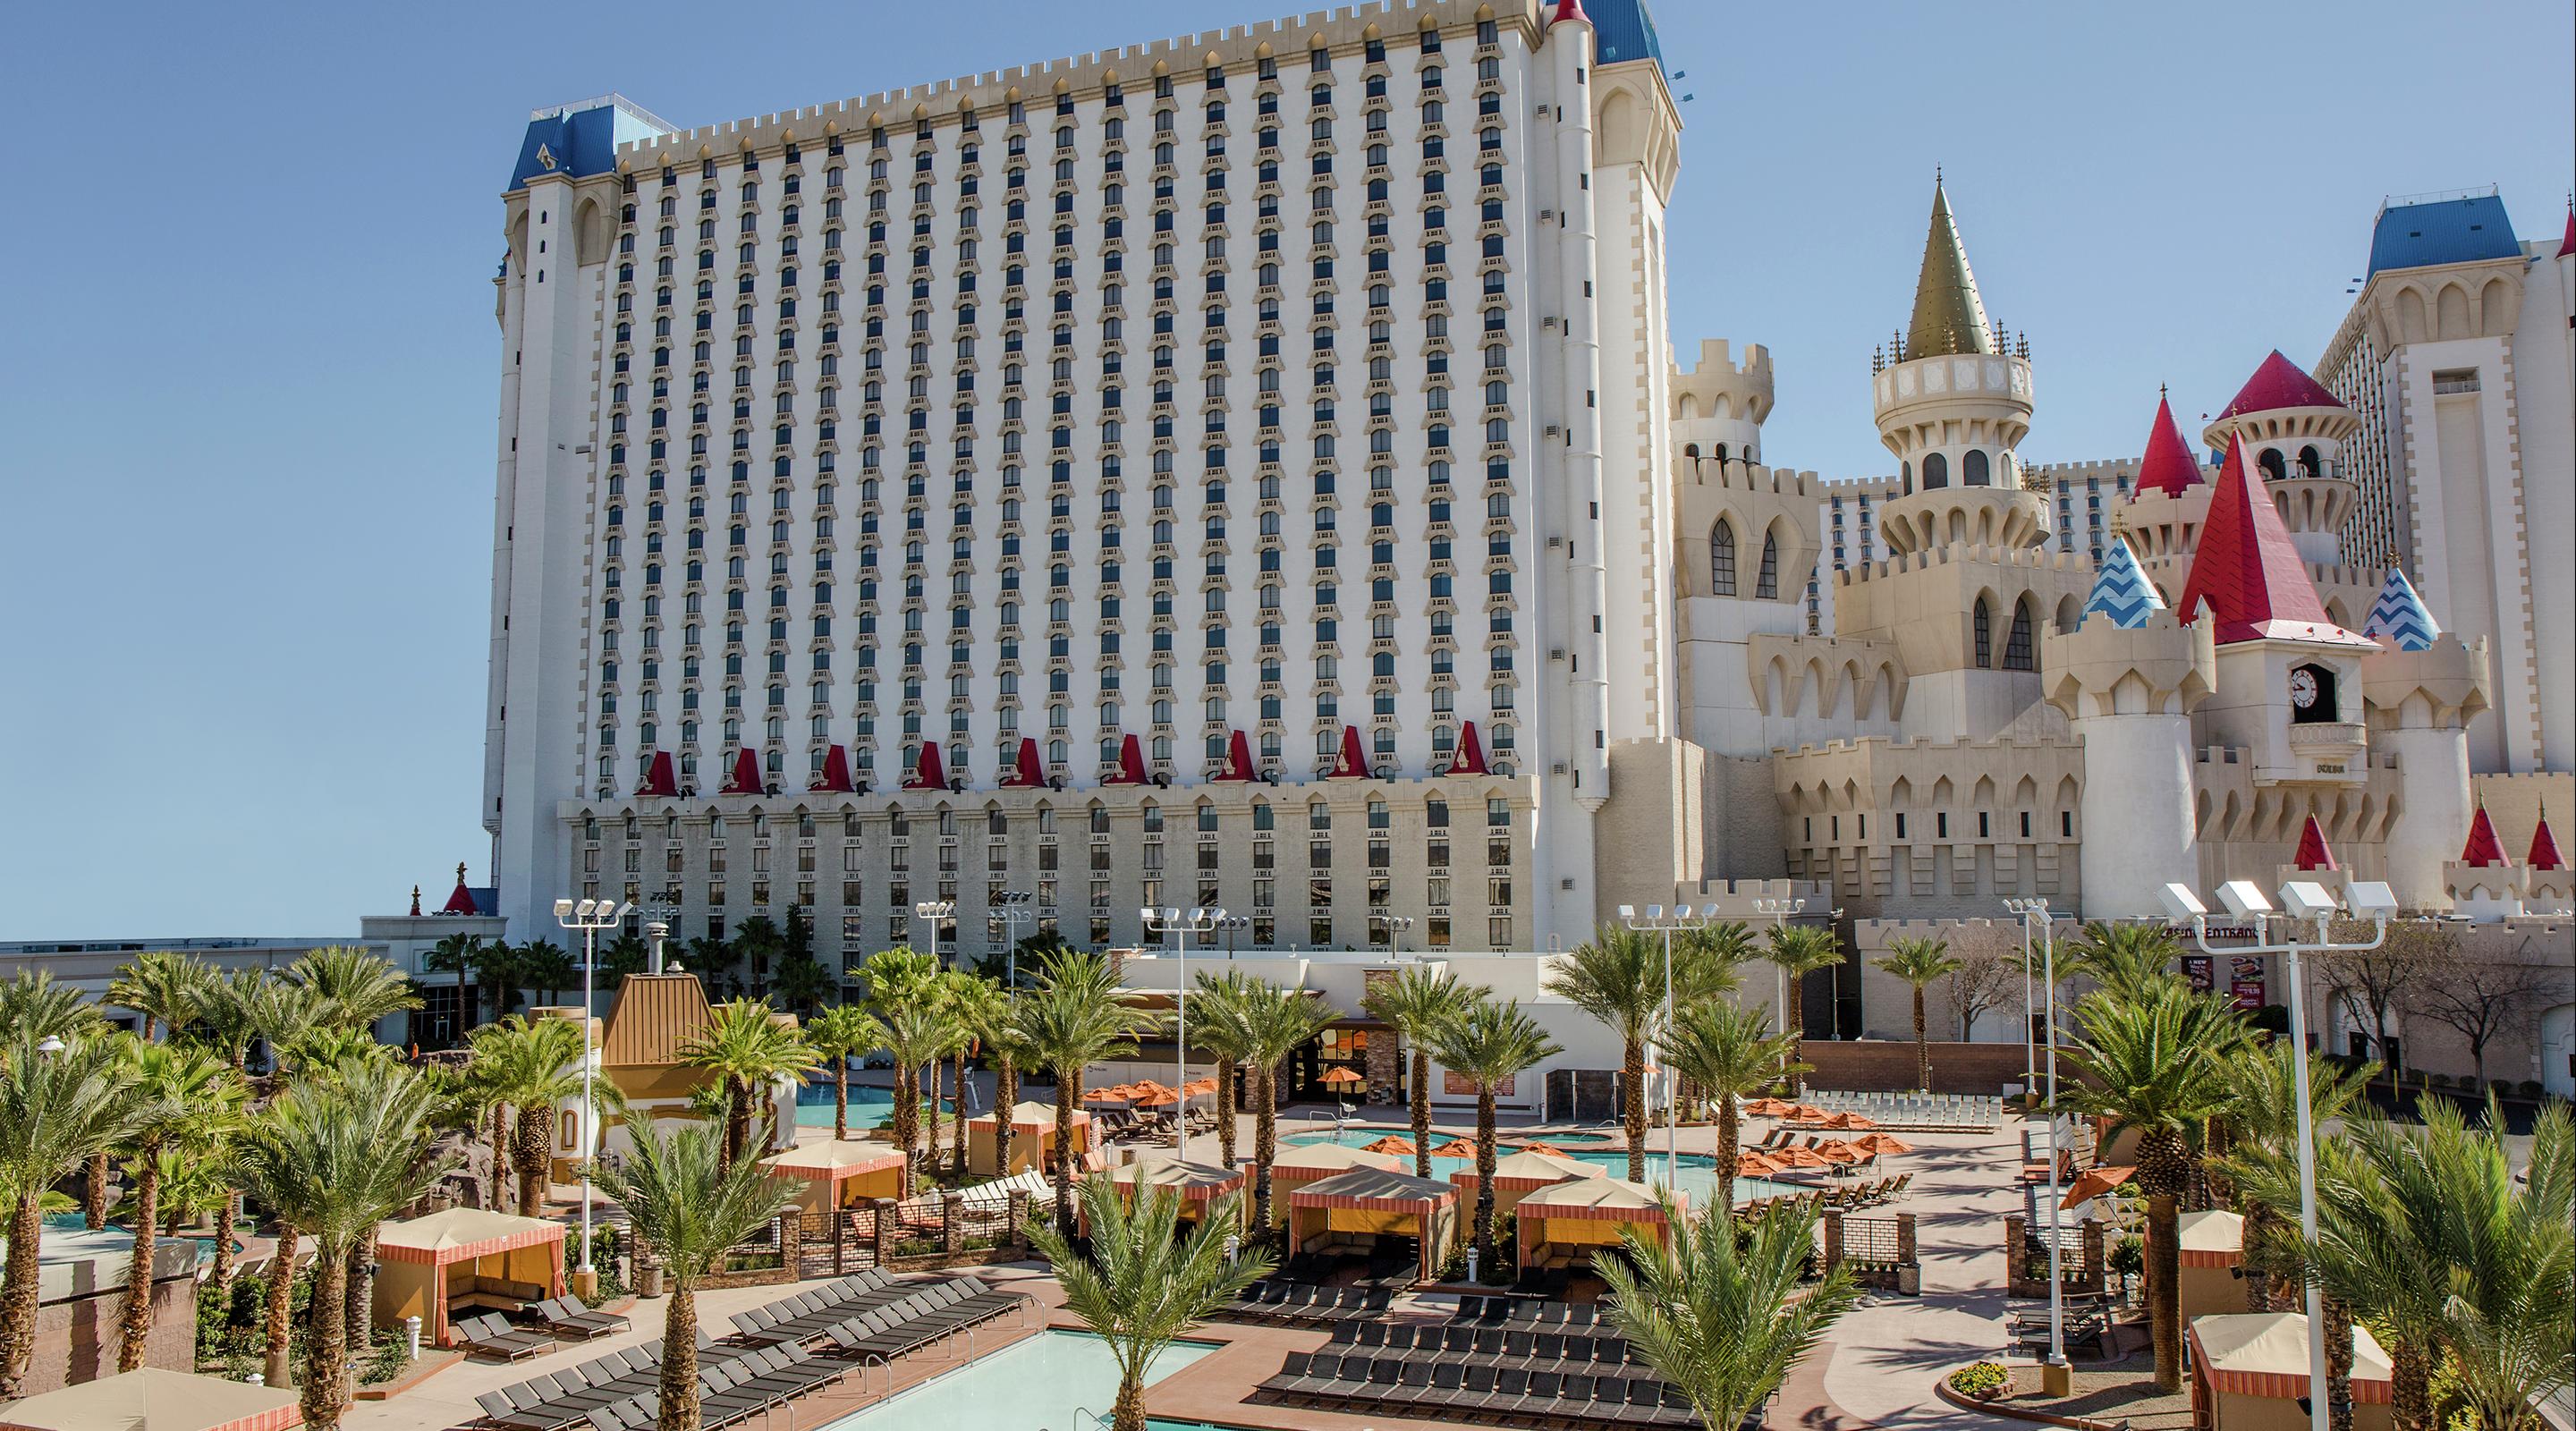 Excalibur Hotel And Casino